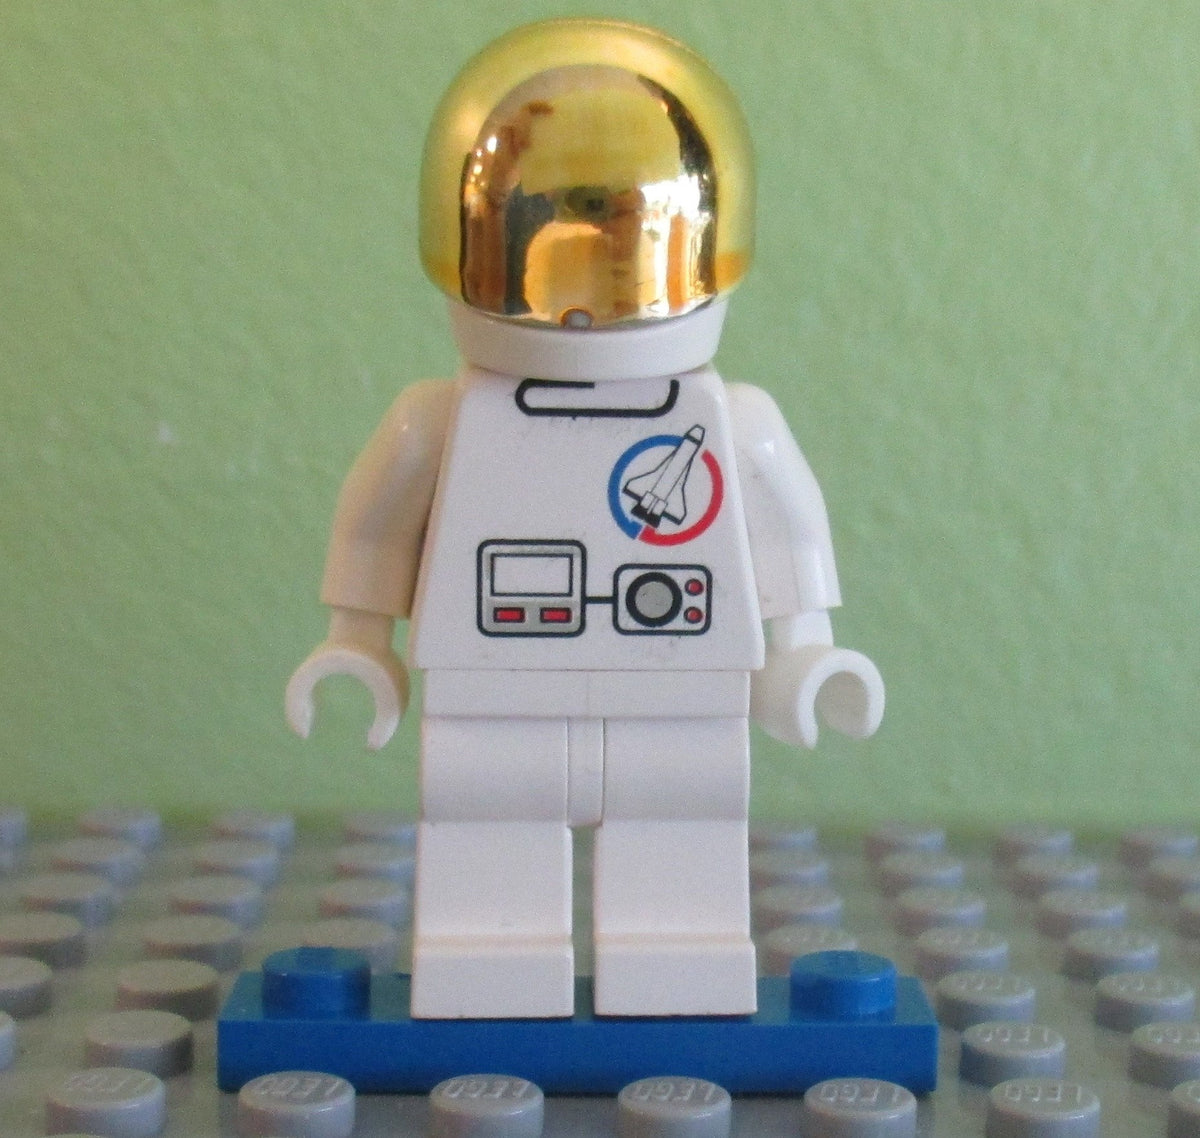 Minifigures Launch Command splc003 Space Lego 